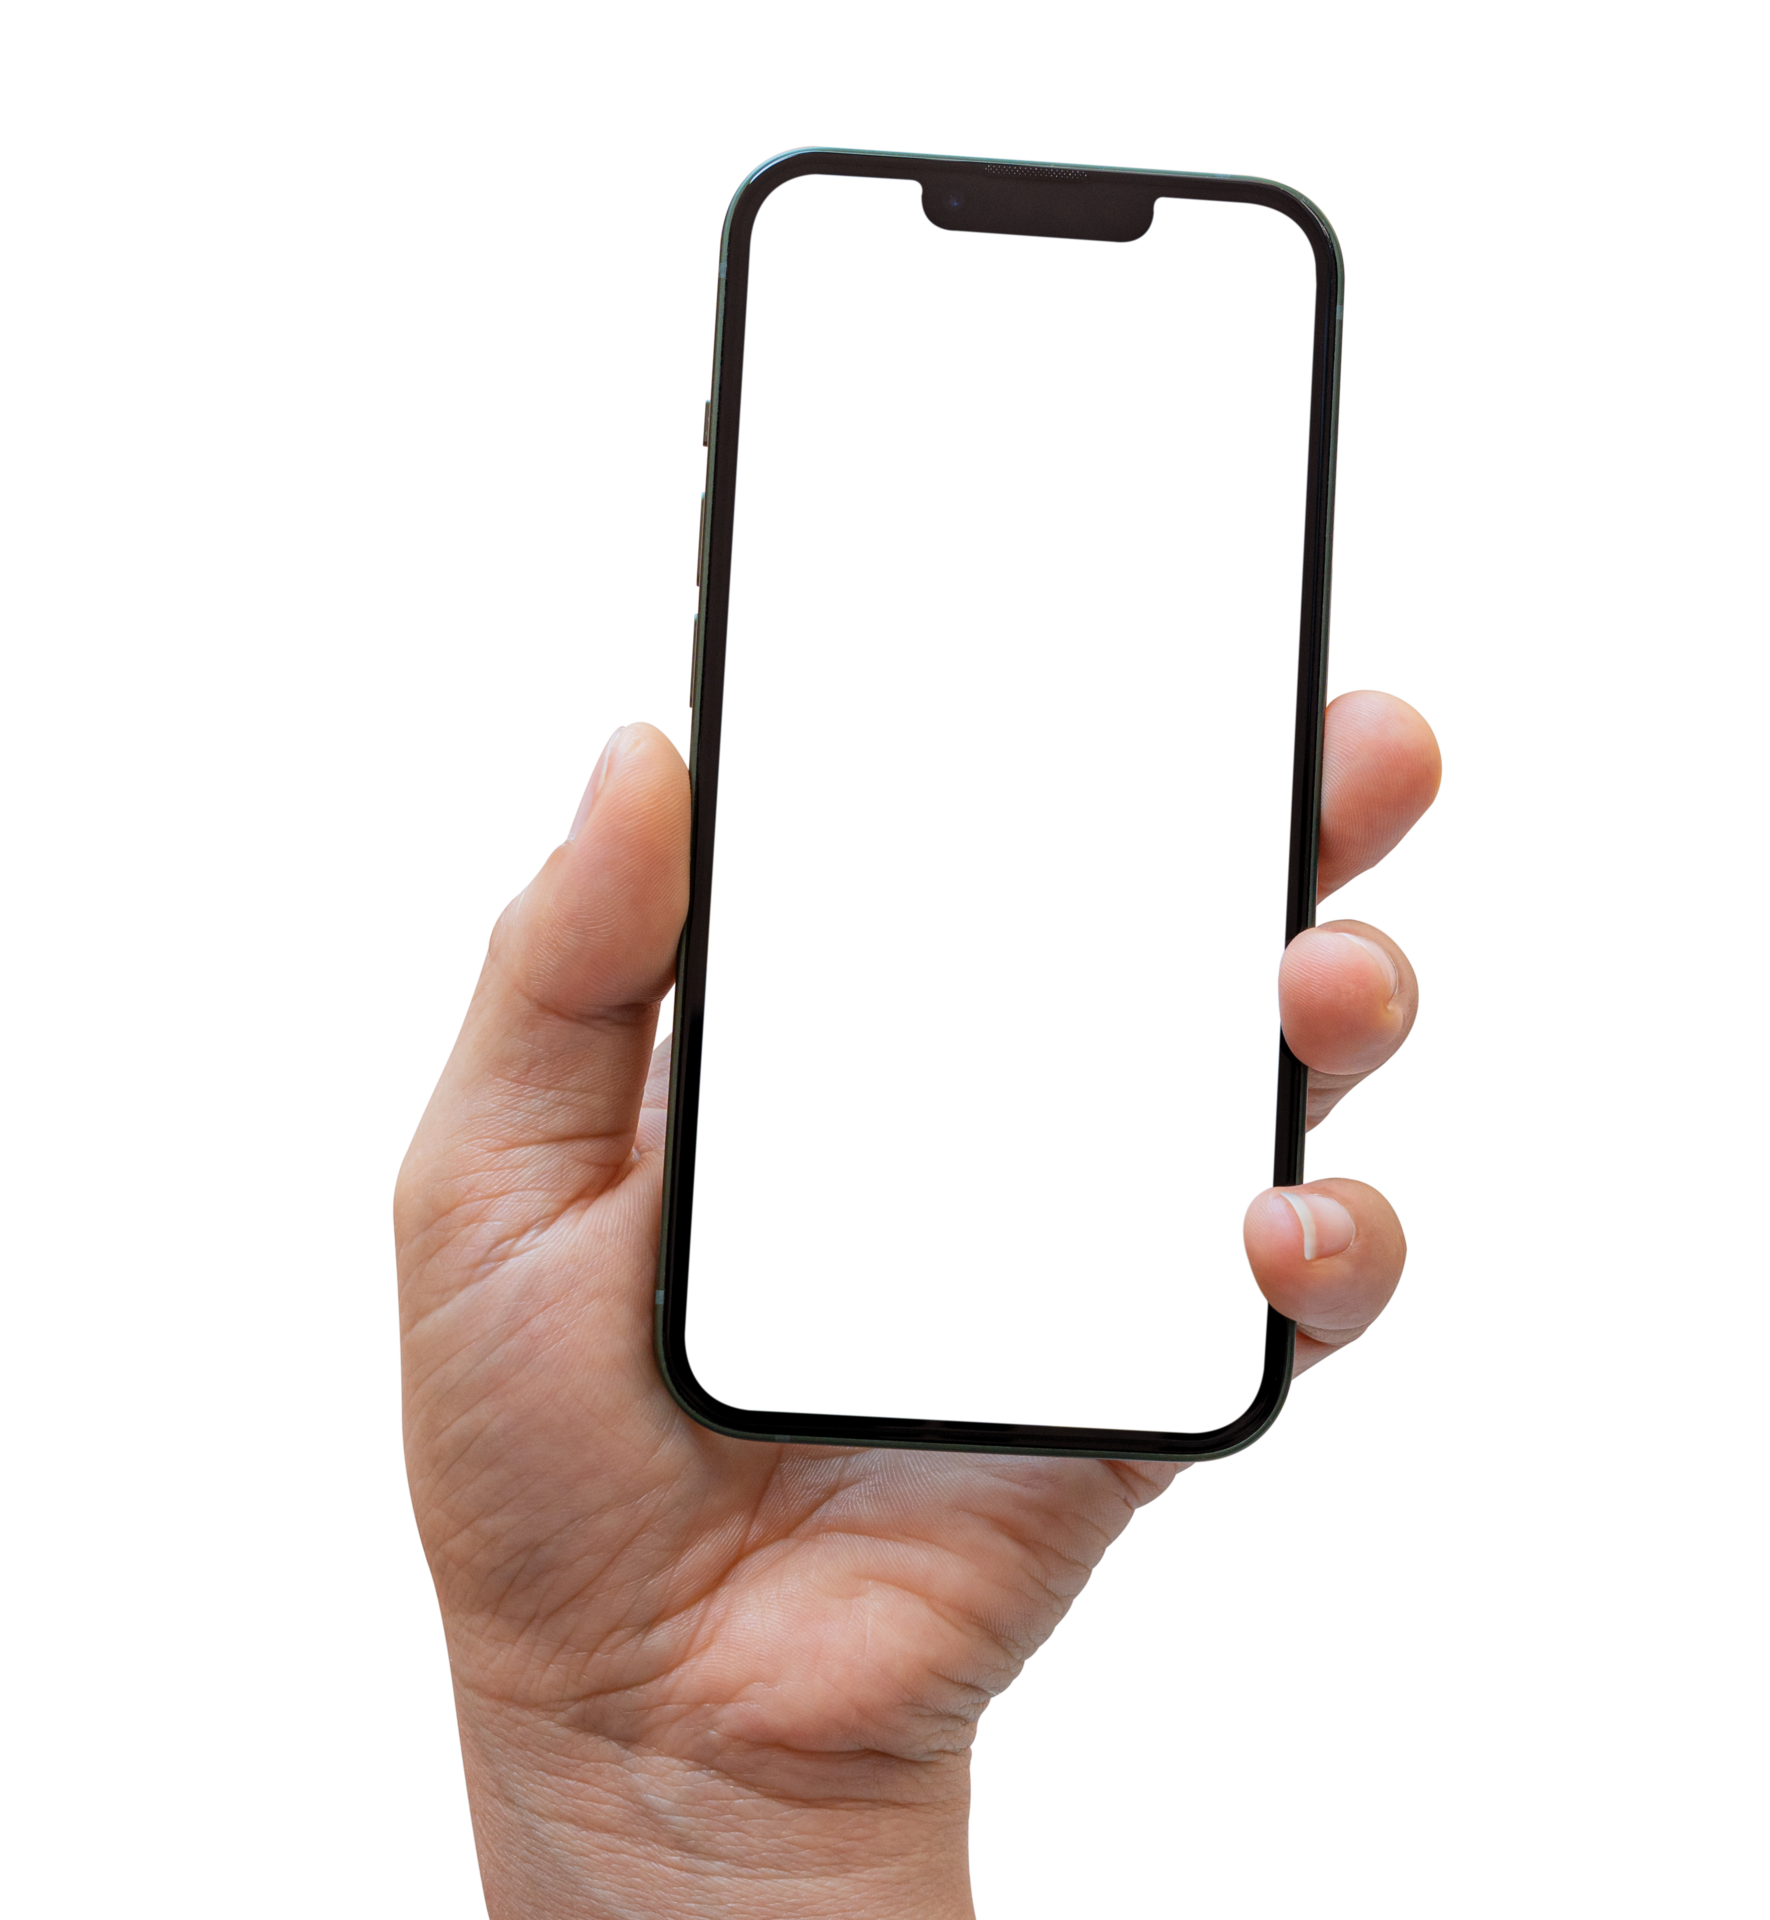 Smartphone mockup on transparent background, PNG file Format. Hand ...